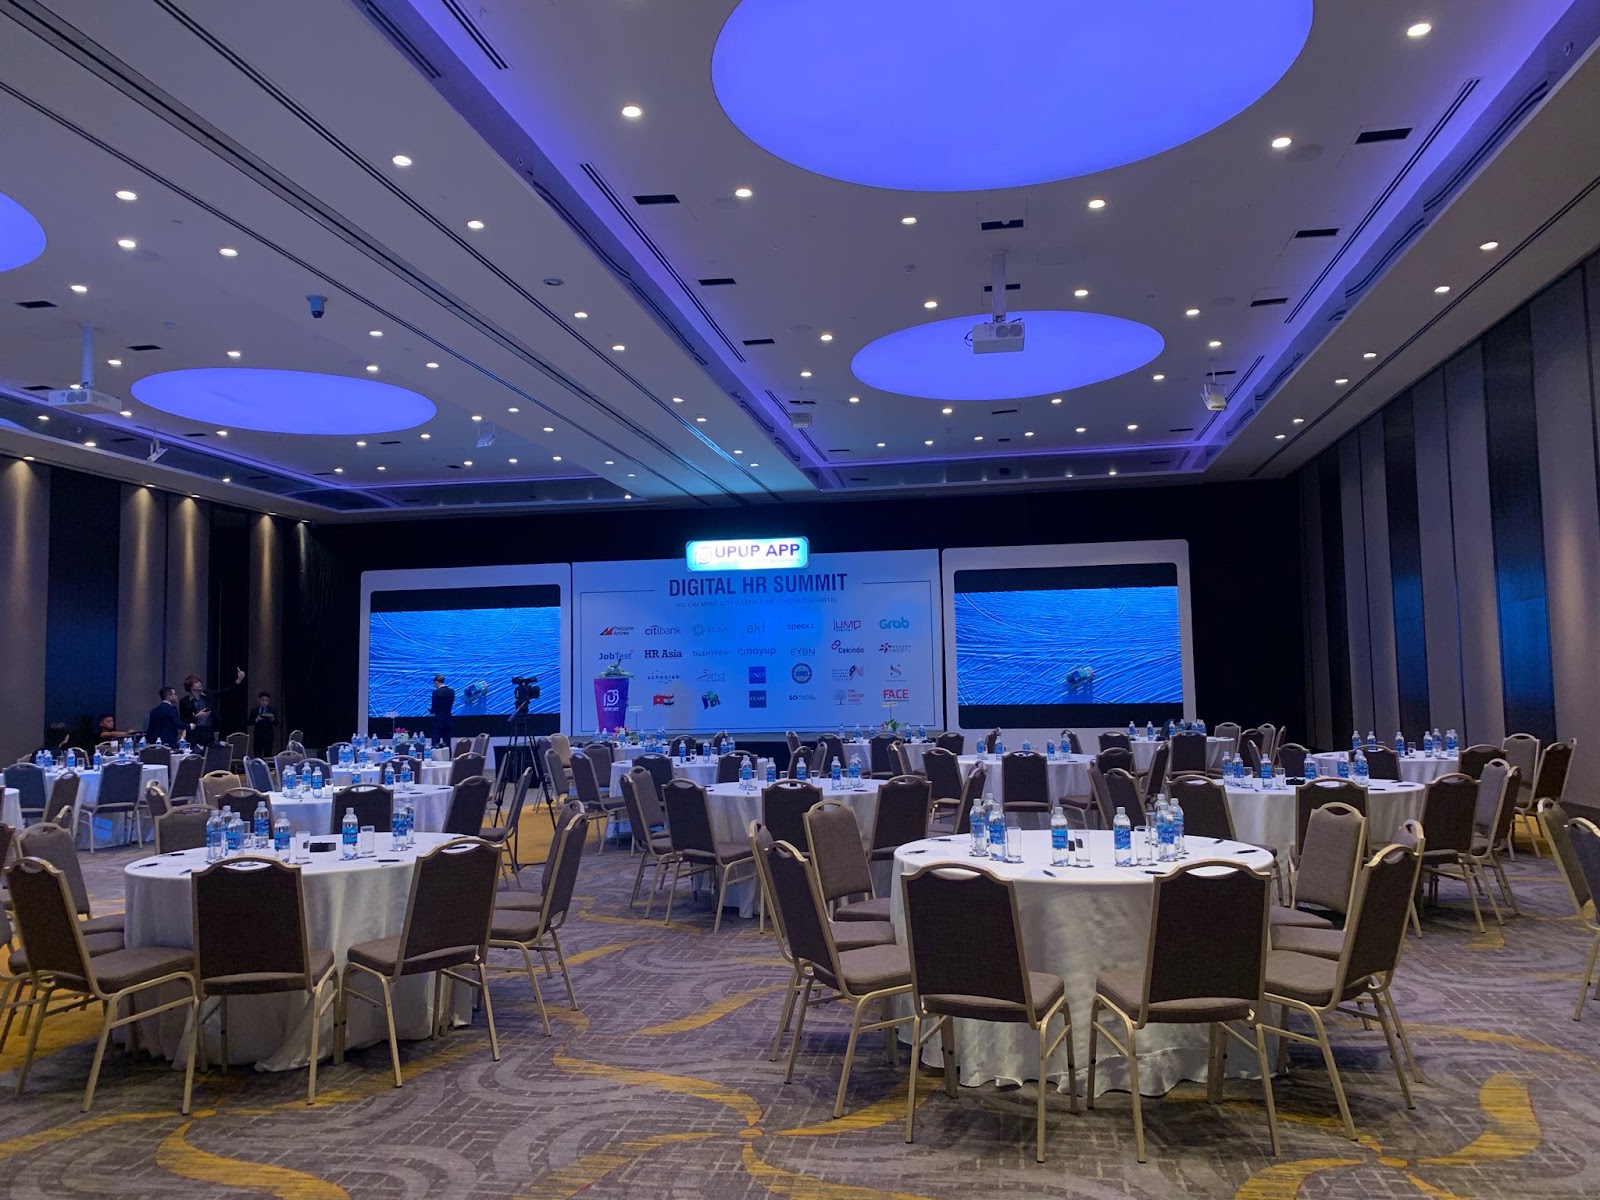 Toàn cảnh trước ngày diễn ra sự kiện "Digital HR Summit 2019" đã được chuẩn bị sẵn sàng